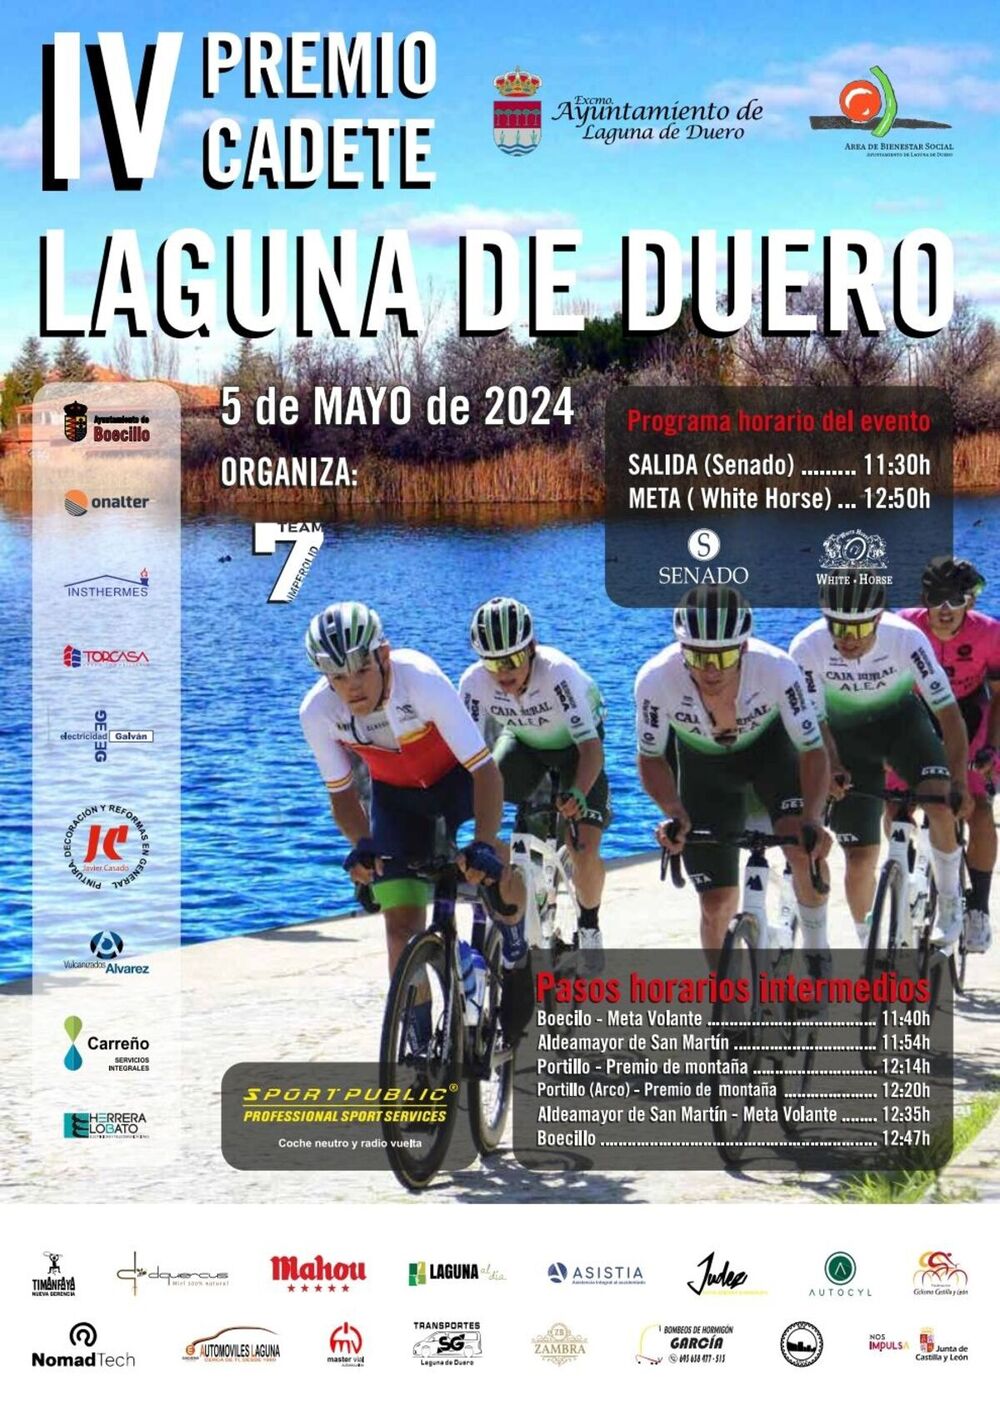 Cien ciclistas cadetes se citarán en el Premio Laguna de Duero